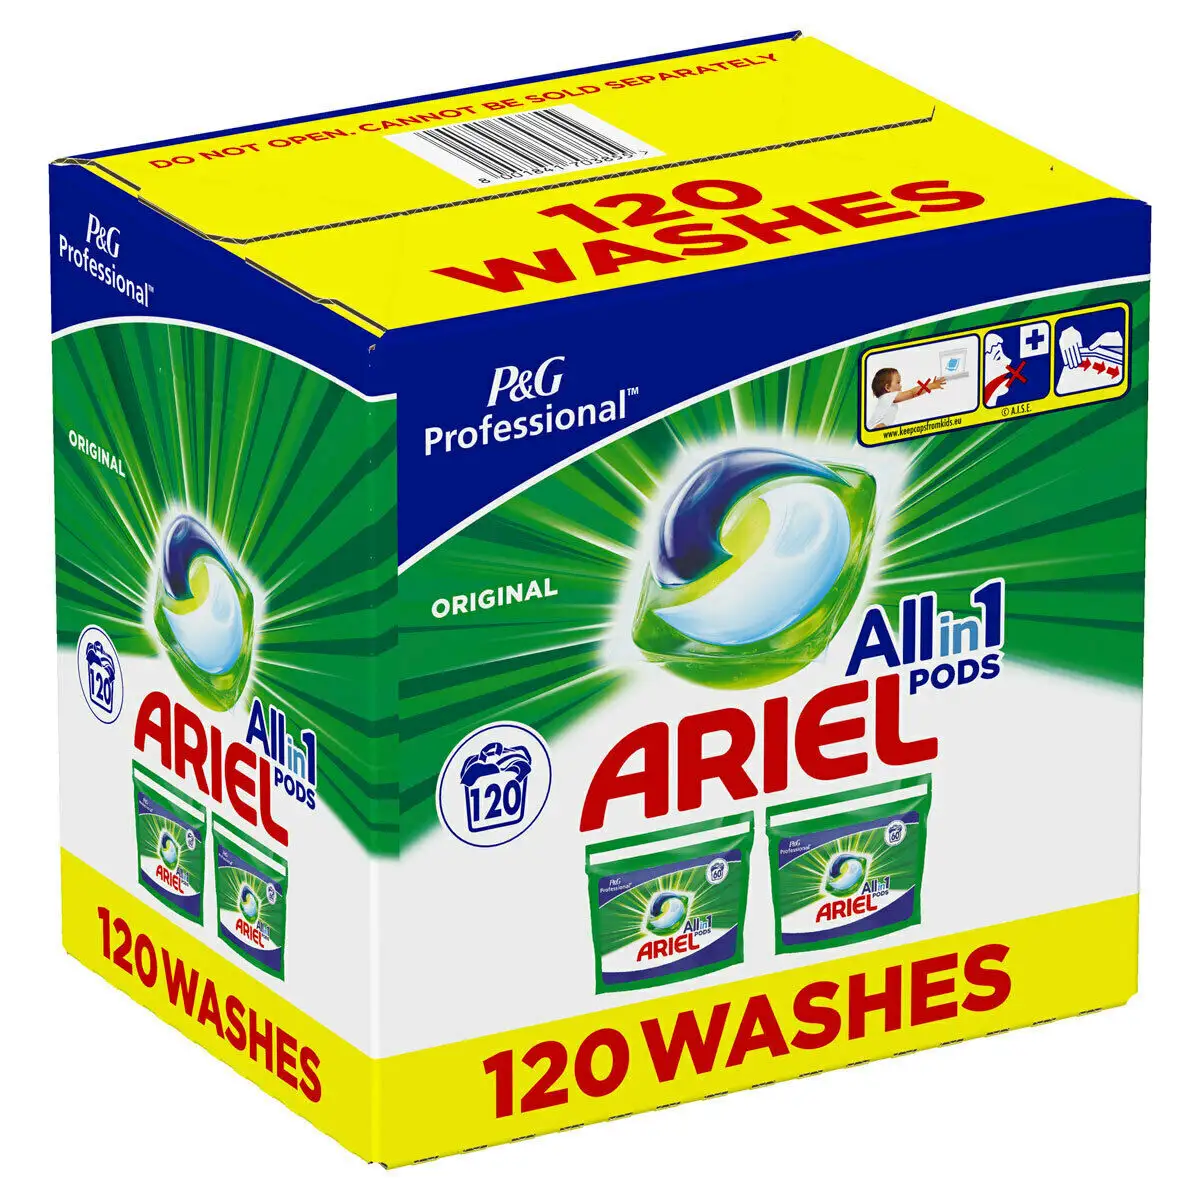 Güçlü Ariel 3 in 1 dağ bahar yıkama jel kapsüller/Ariel hepsi 1 kapsül/Ariel 3in1 PODS, yıkama sıvısı kapsül